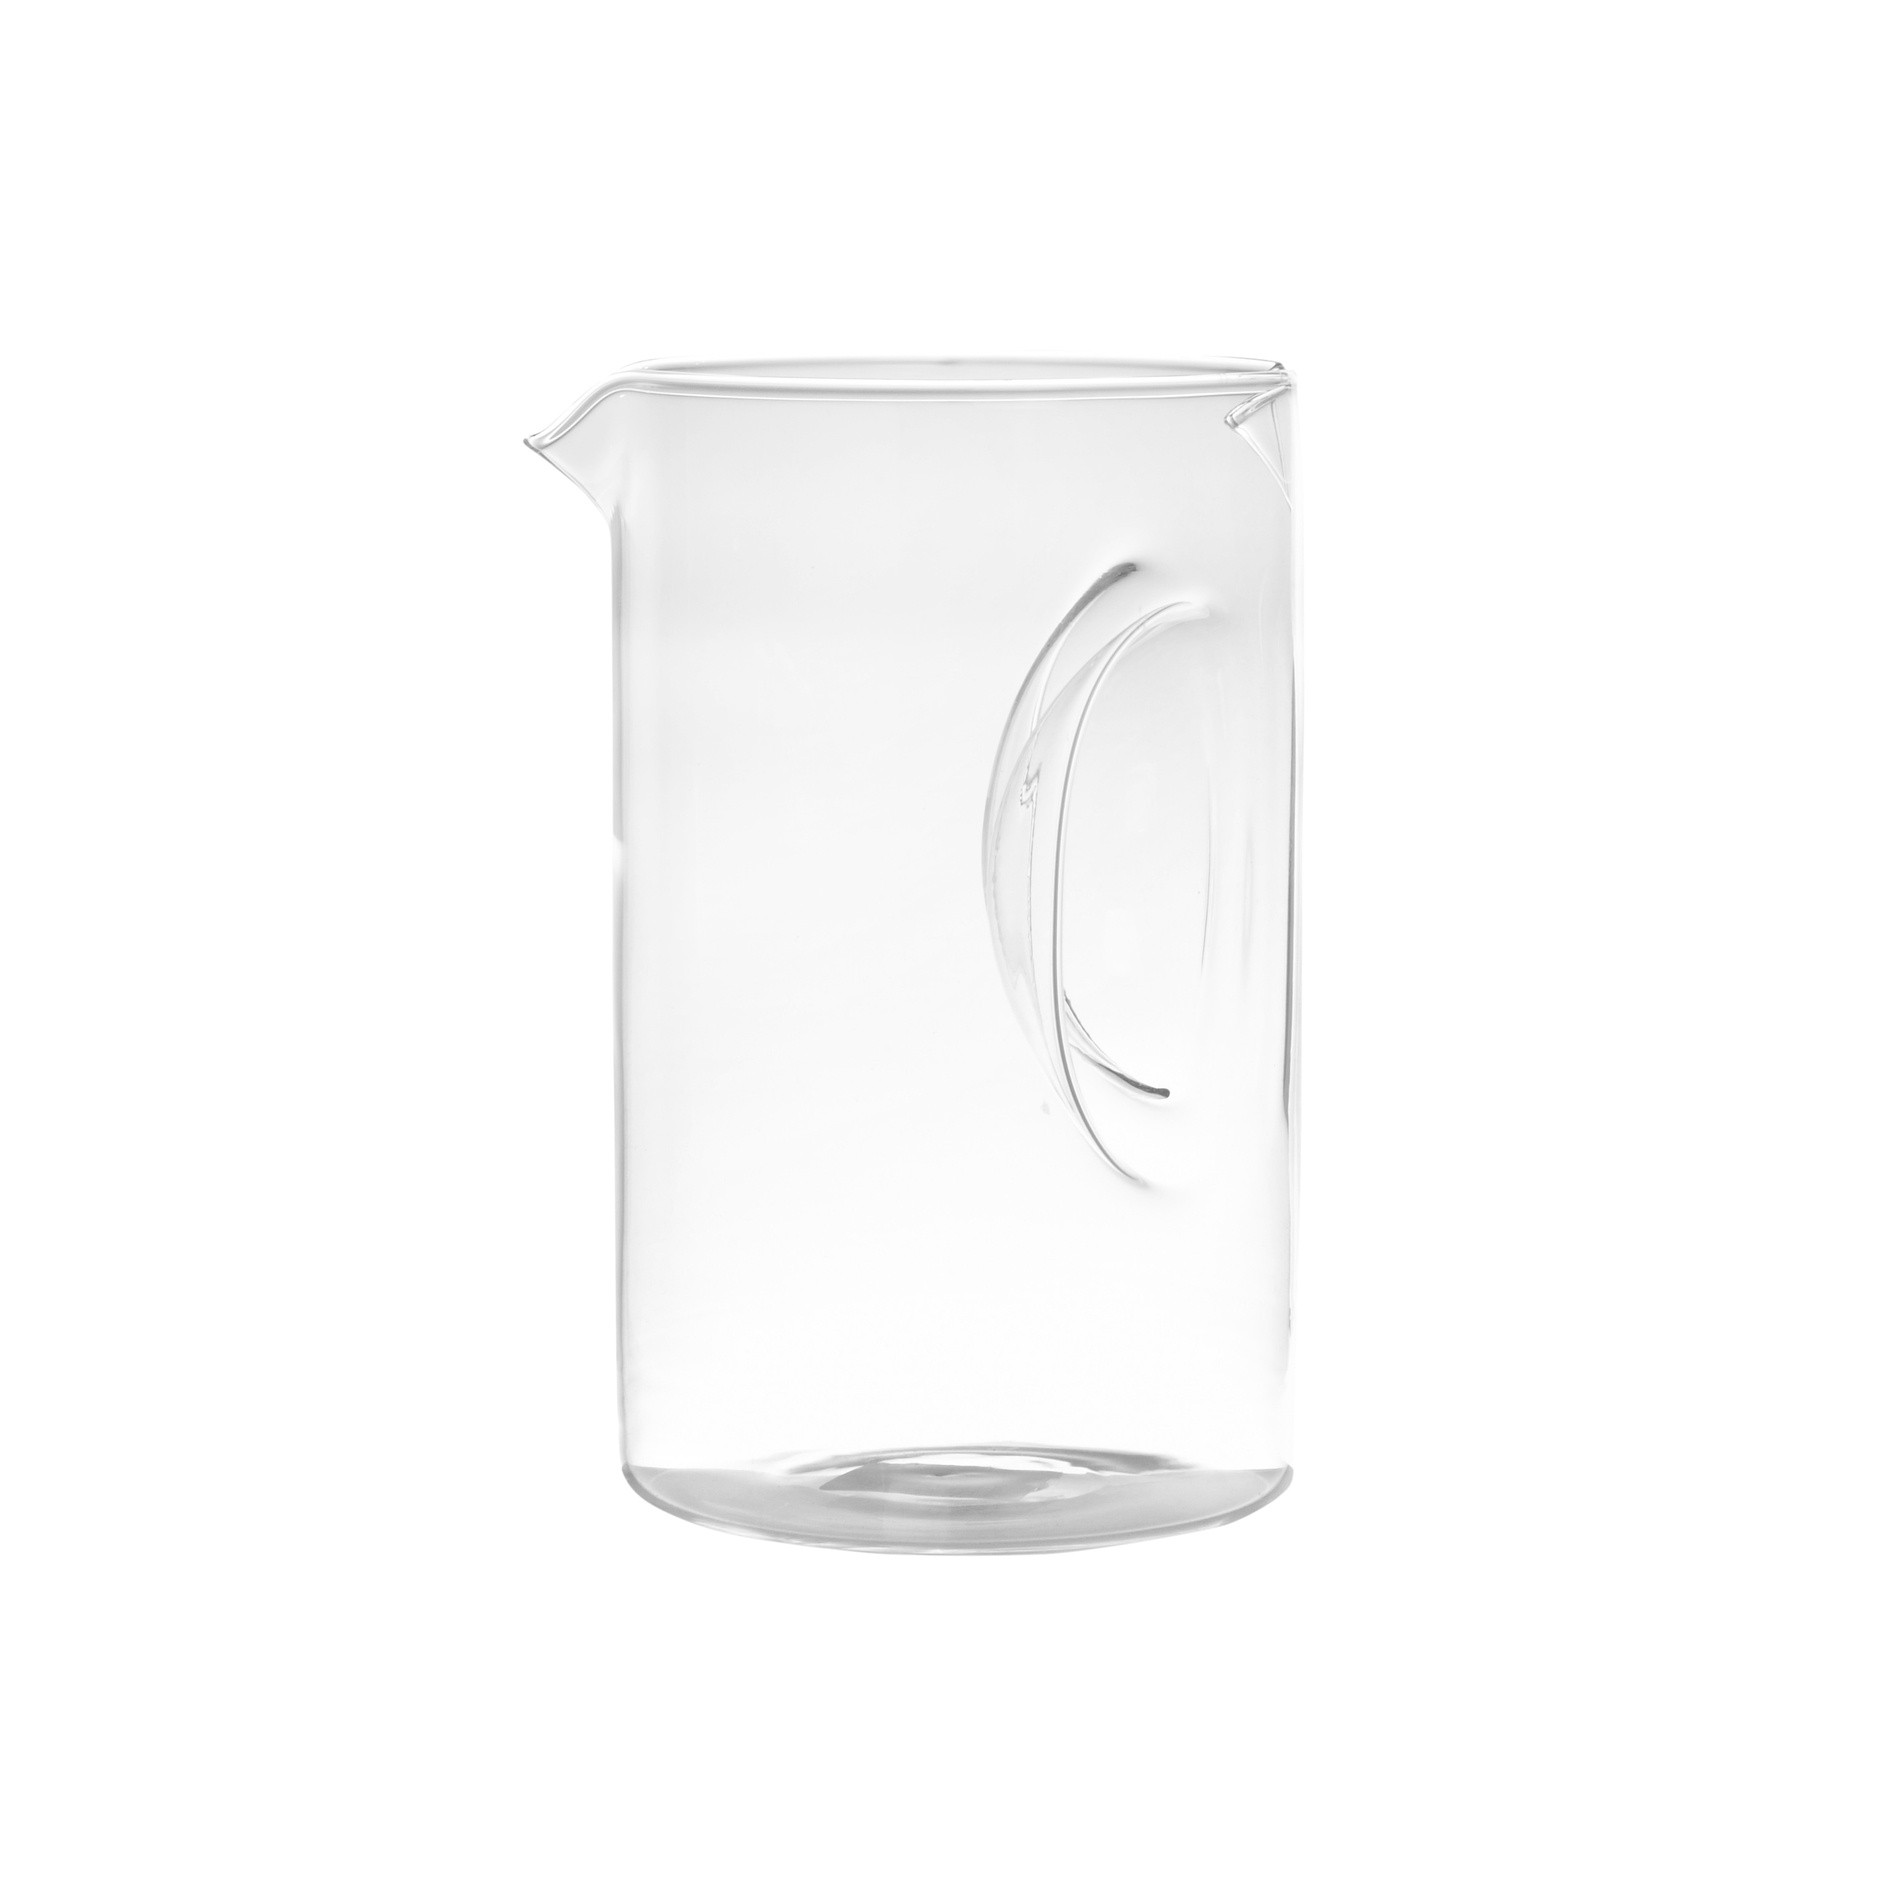 Caraffa Estilook in vetro borosilicato da 1,2 lt